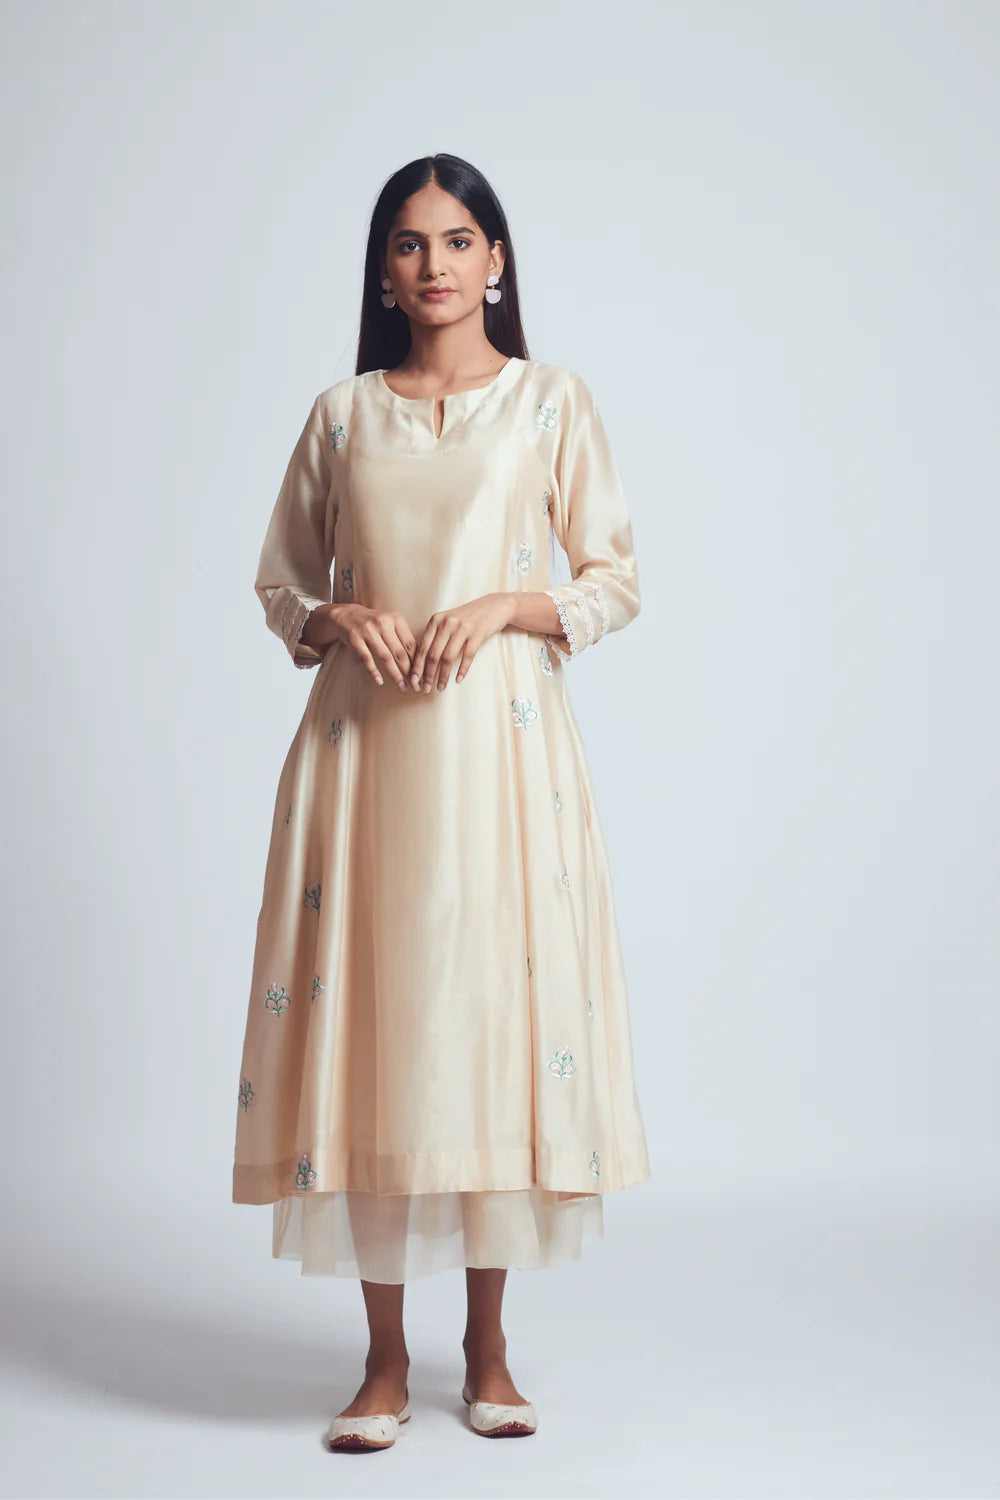 Amna Daisy Ivory Twin Layer Summer Dress - Ready to Ship